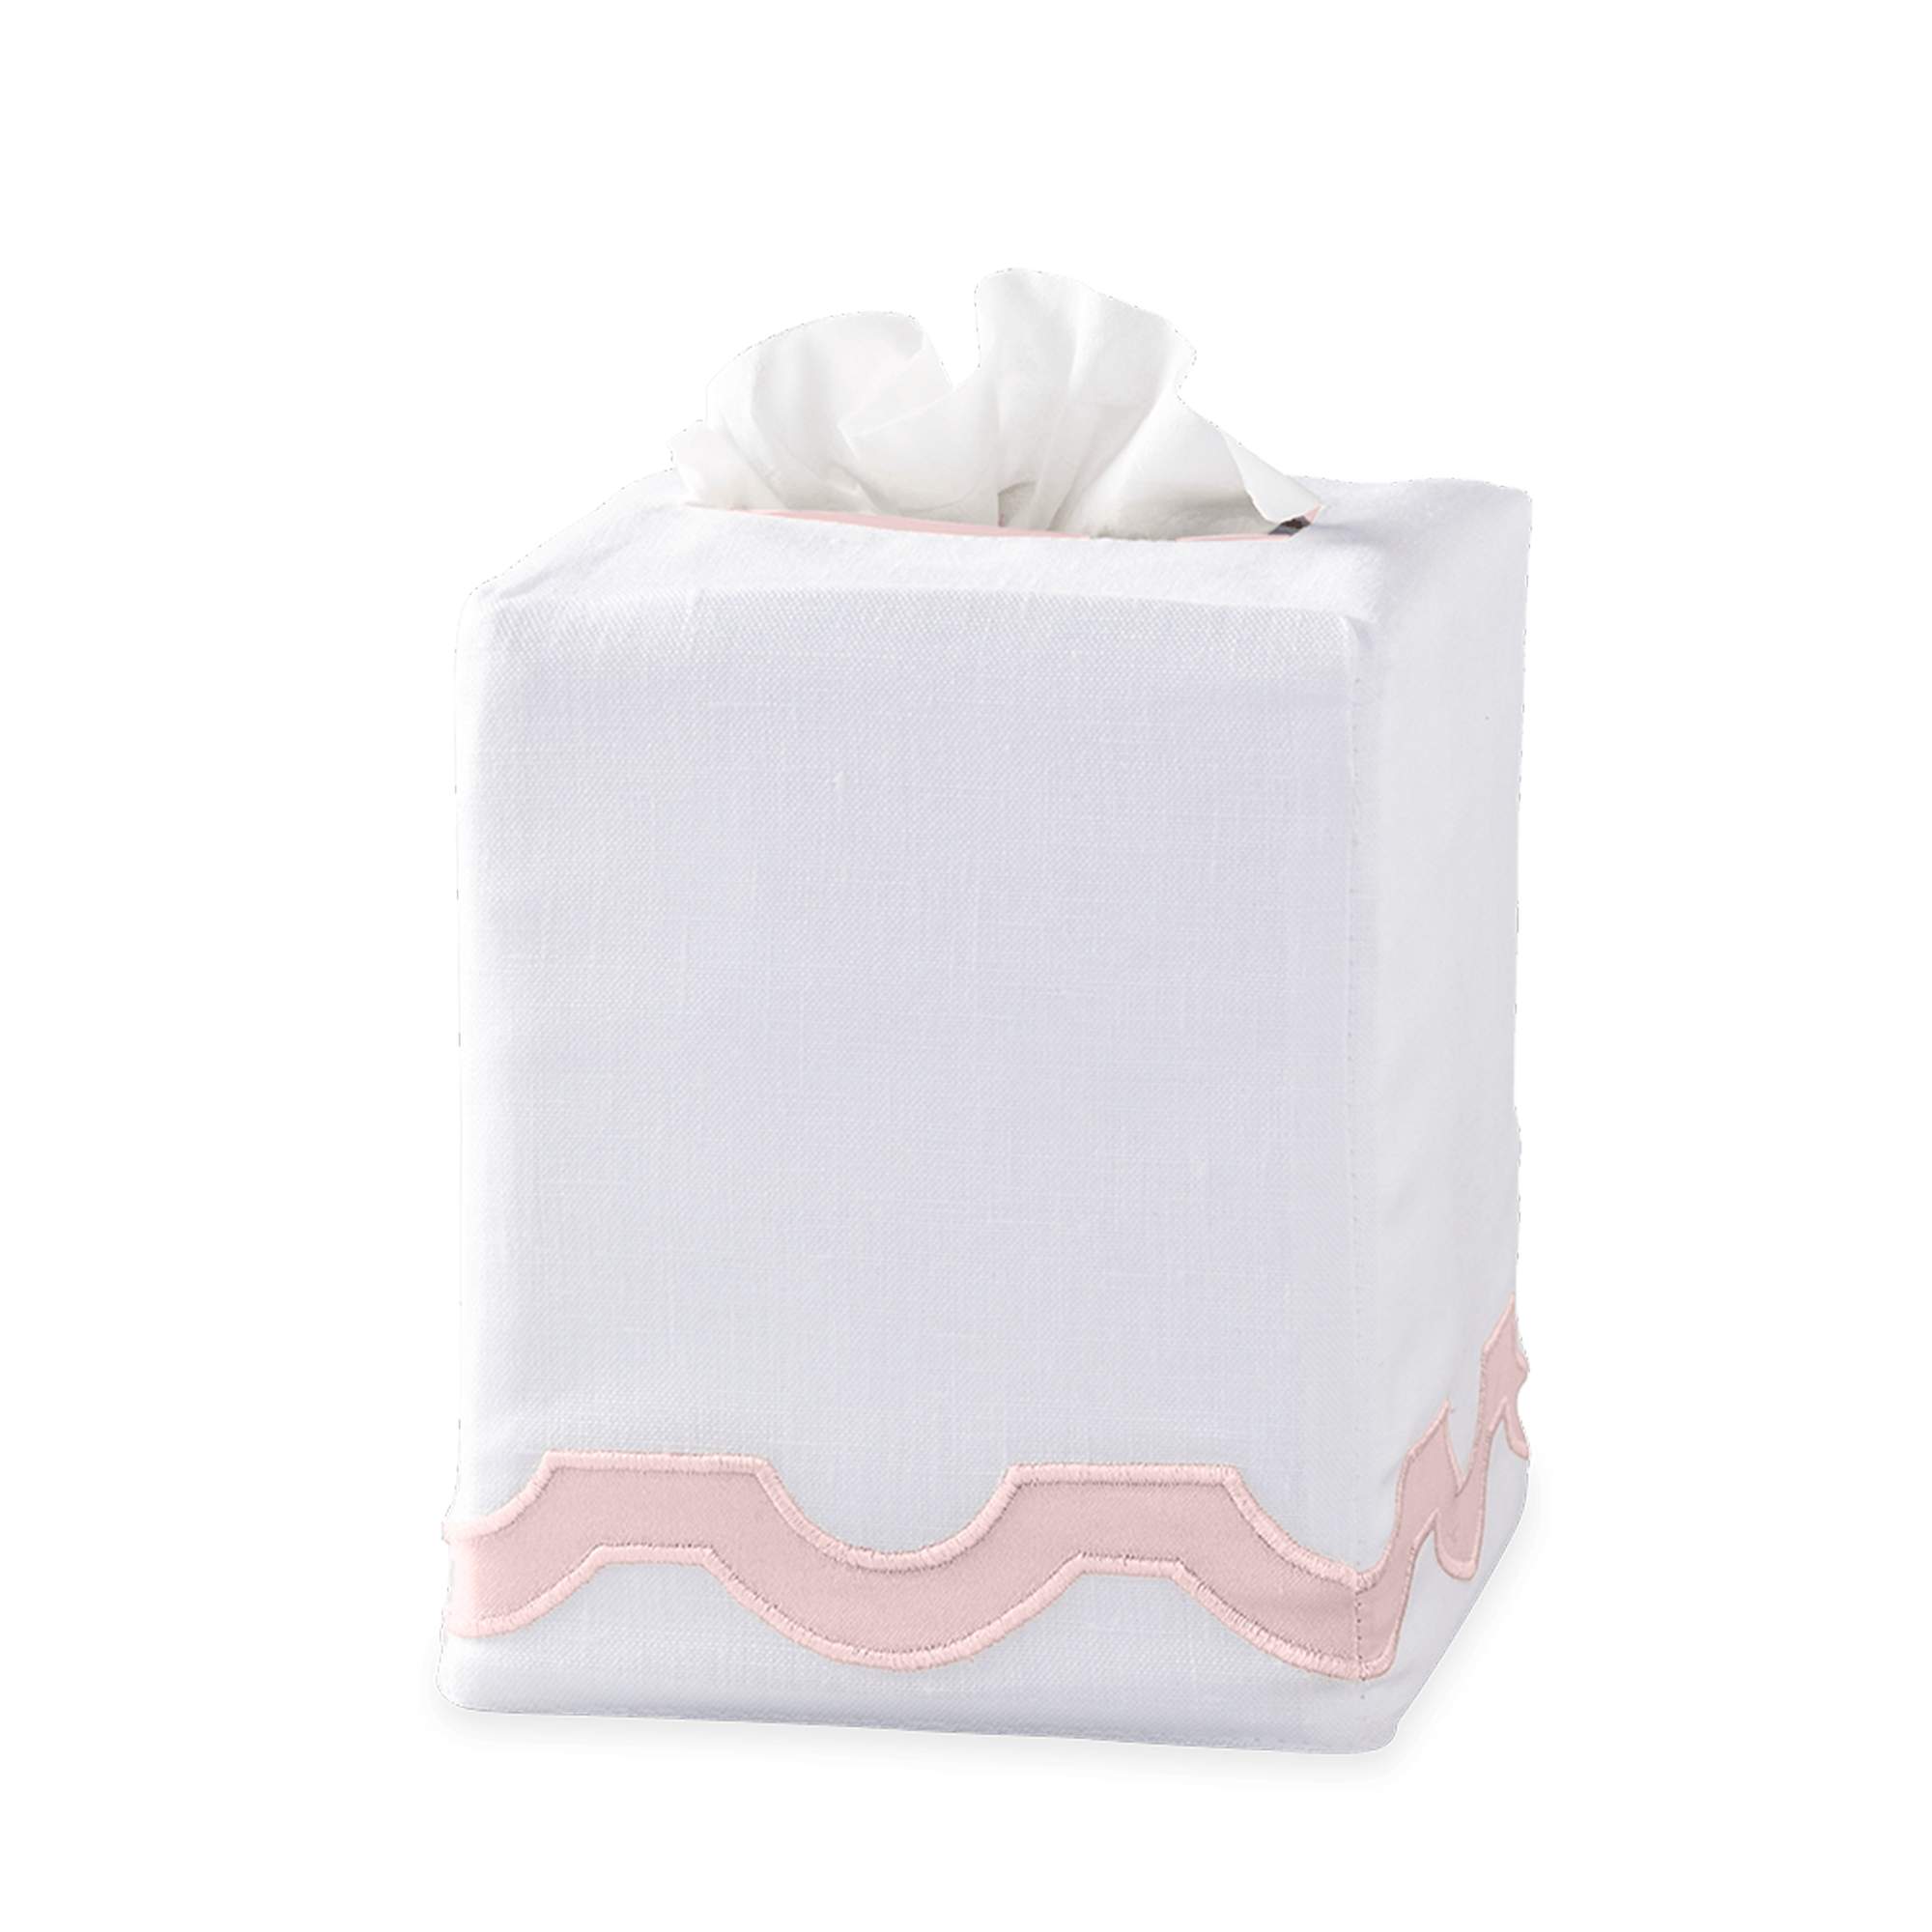 Silo Image of Matouk Mirasol Tissue Box Cover in Pink Color